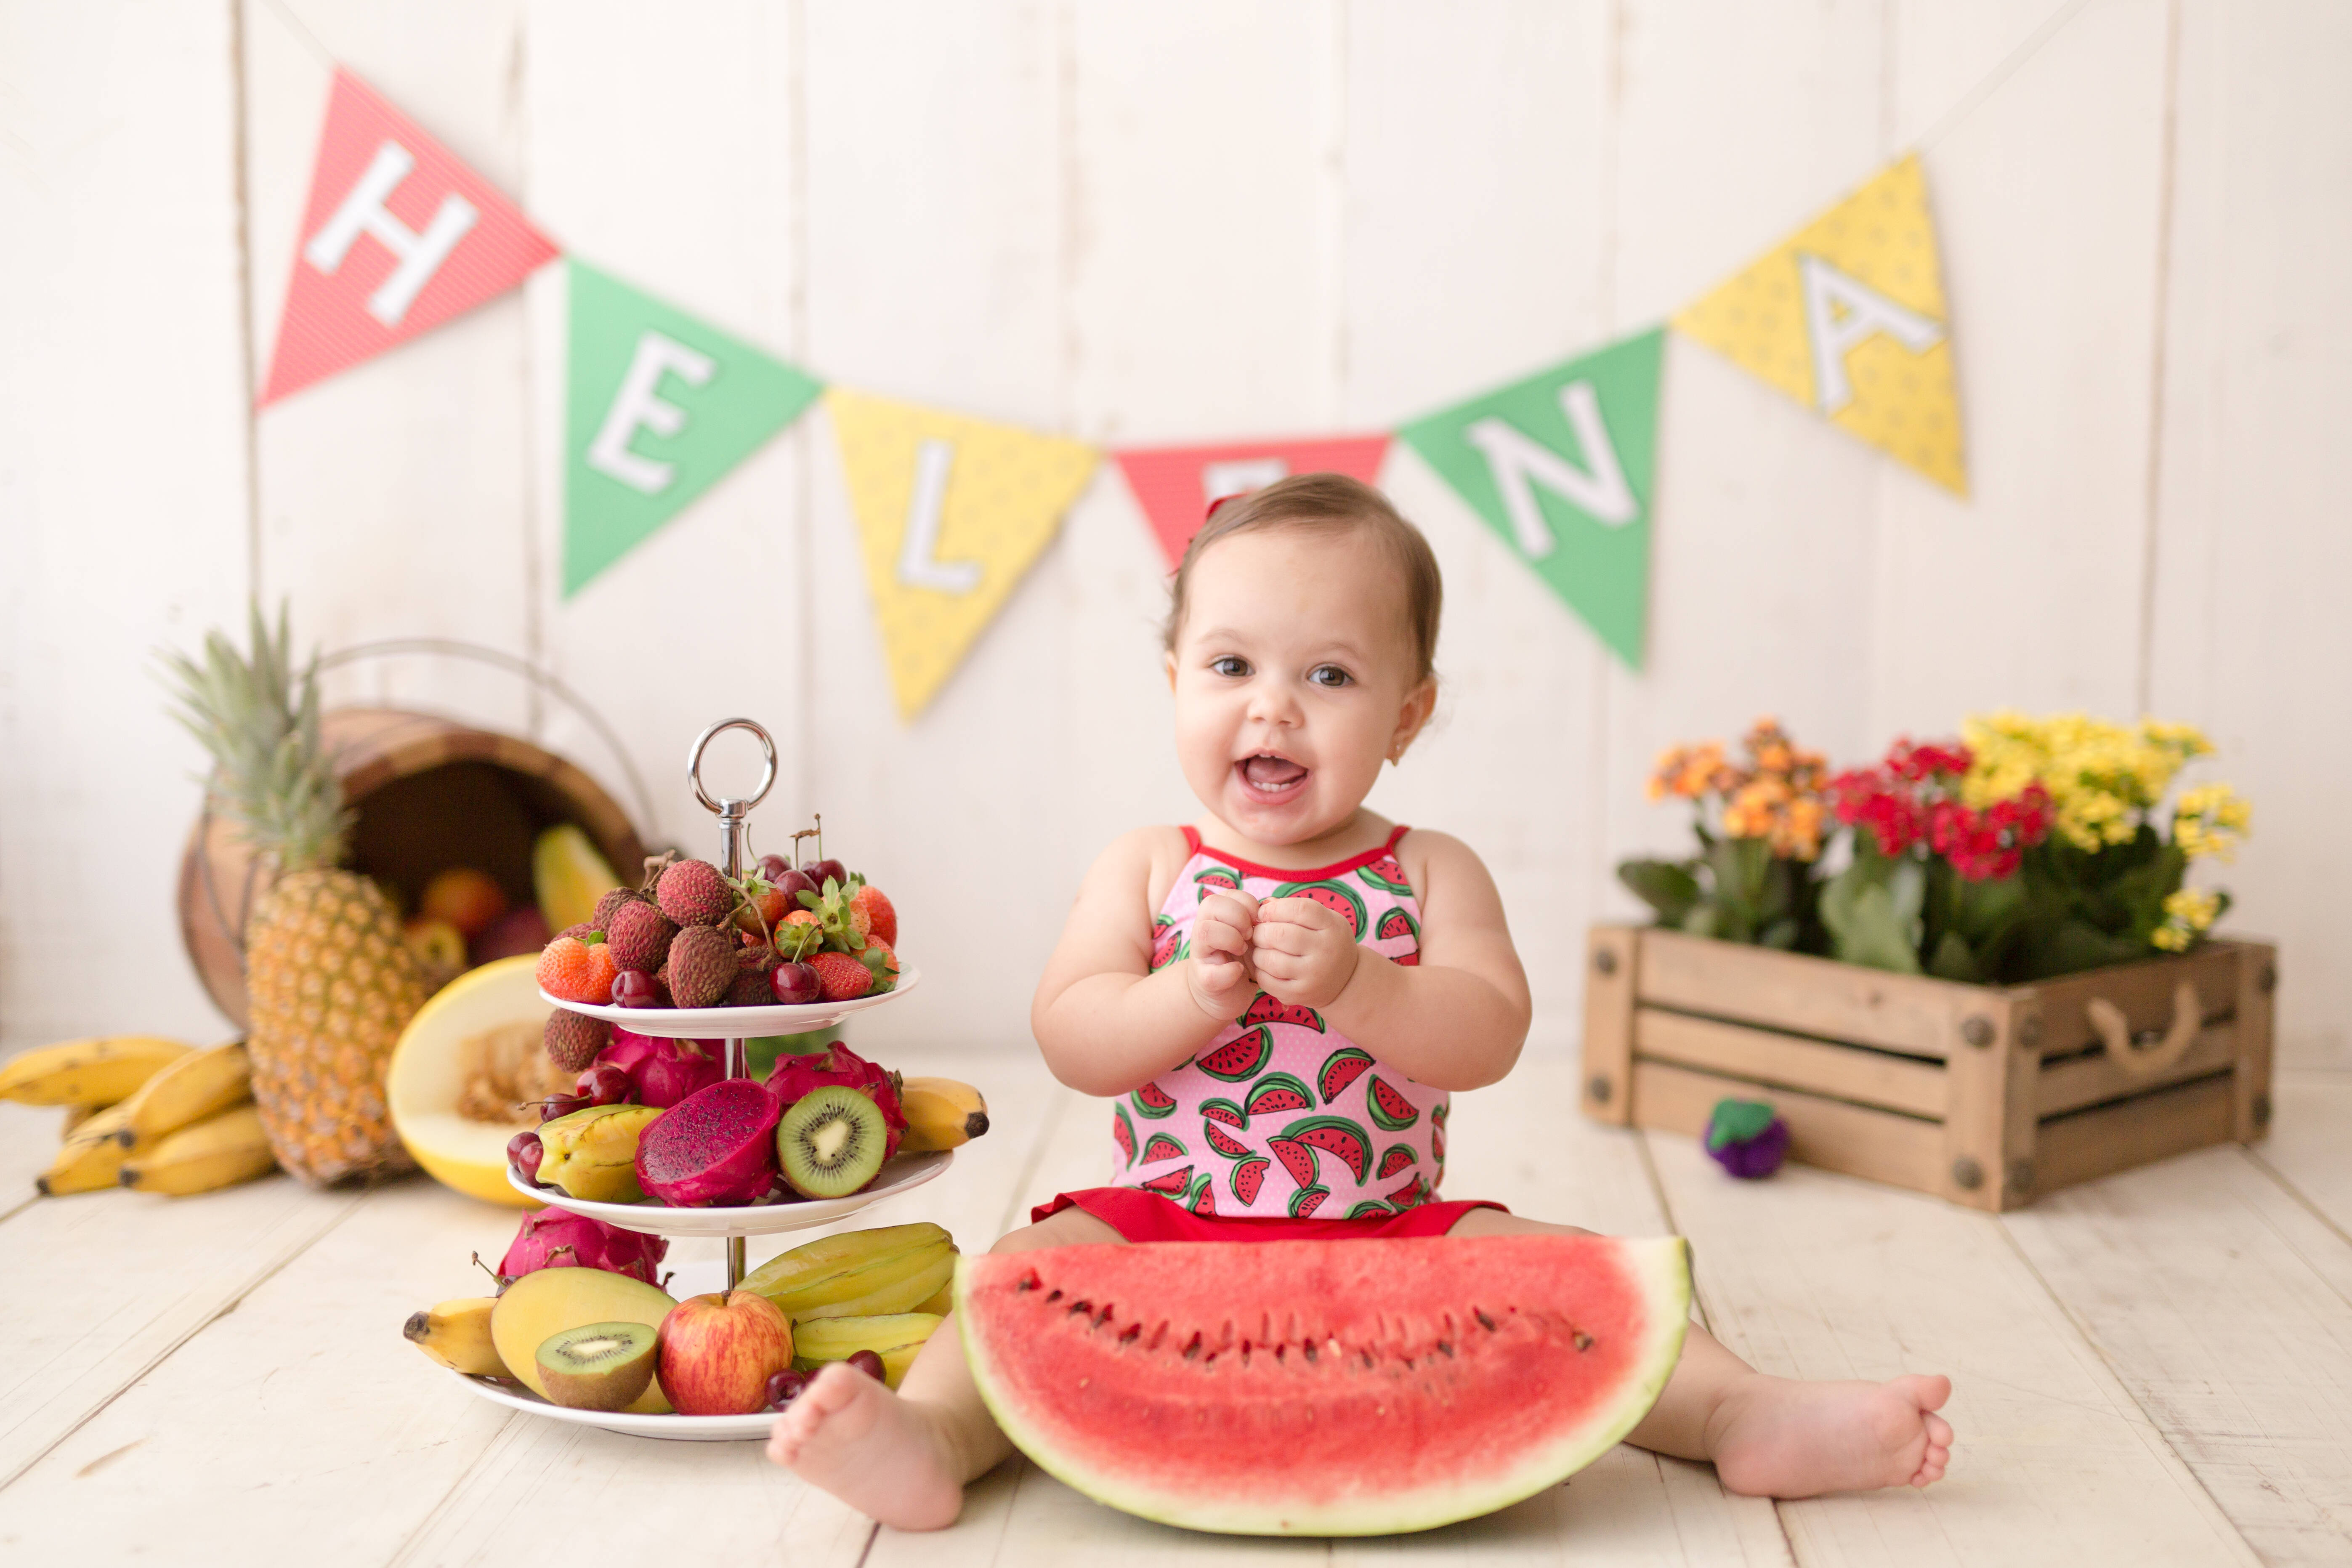 A ideia de ensaios como "Smash the Fruit" e "Smash the Cake" é deixar a criança experimentar os sabores e fazer bagunça. Foto: Divulgação/Nina Estanislau